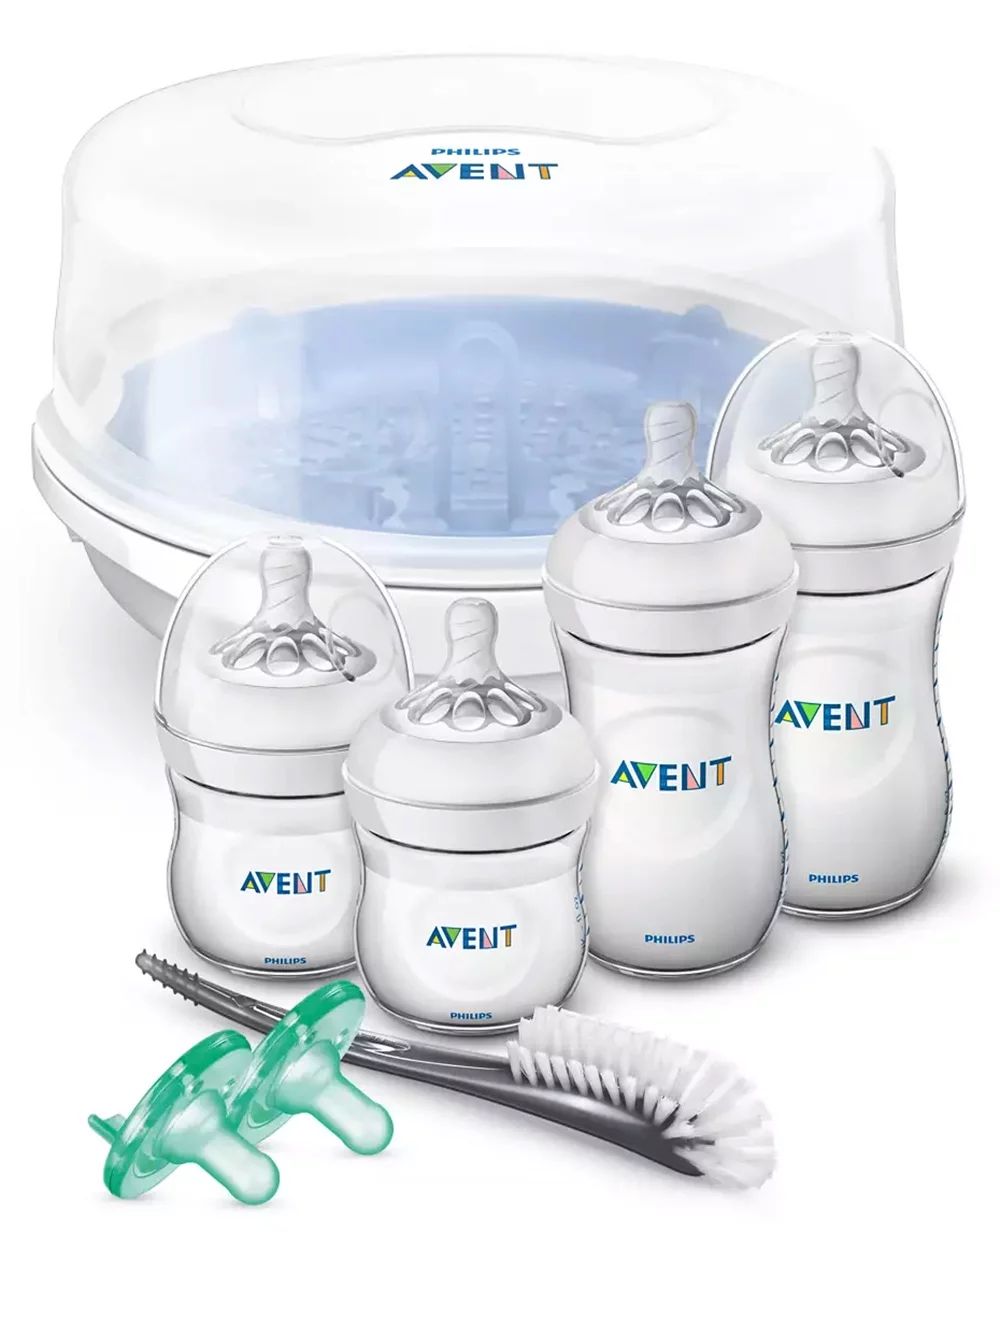 Avent 8-Piece Newborn Essentials Gift Set - white/multi, one size | Walmart (US)